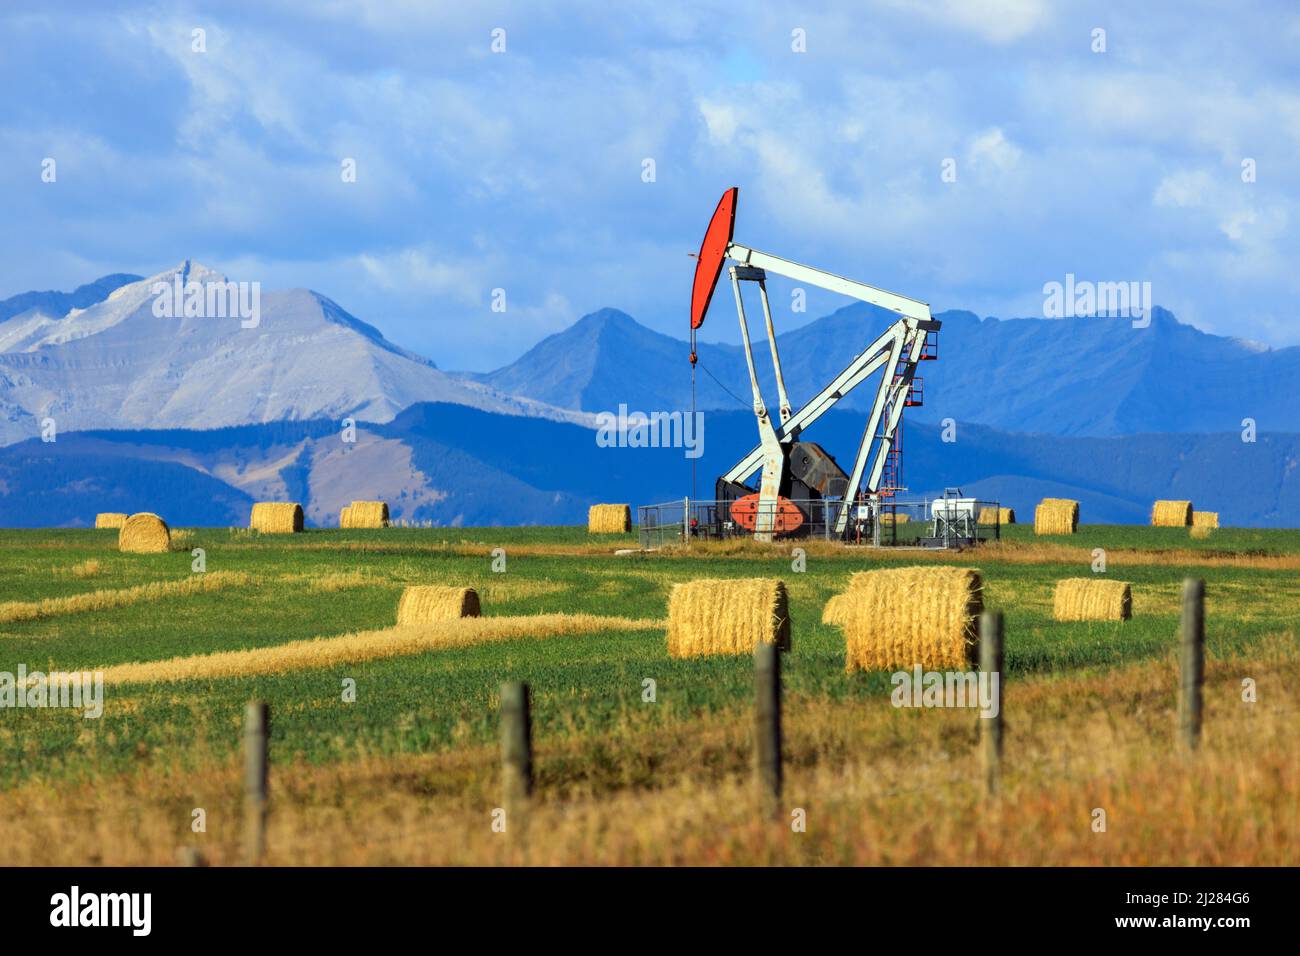 Ein Pumpjack-Bohrgerät der Öl- und Gasindustrie in den kanadischen Prärien mit den kanadischen Rockies in Alberta, Kanada. Stockfoto